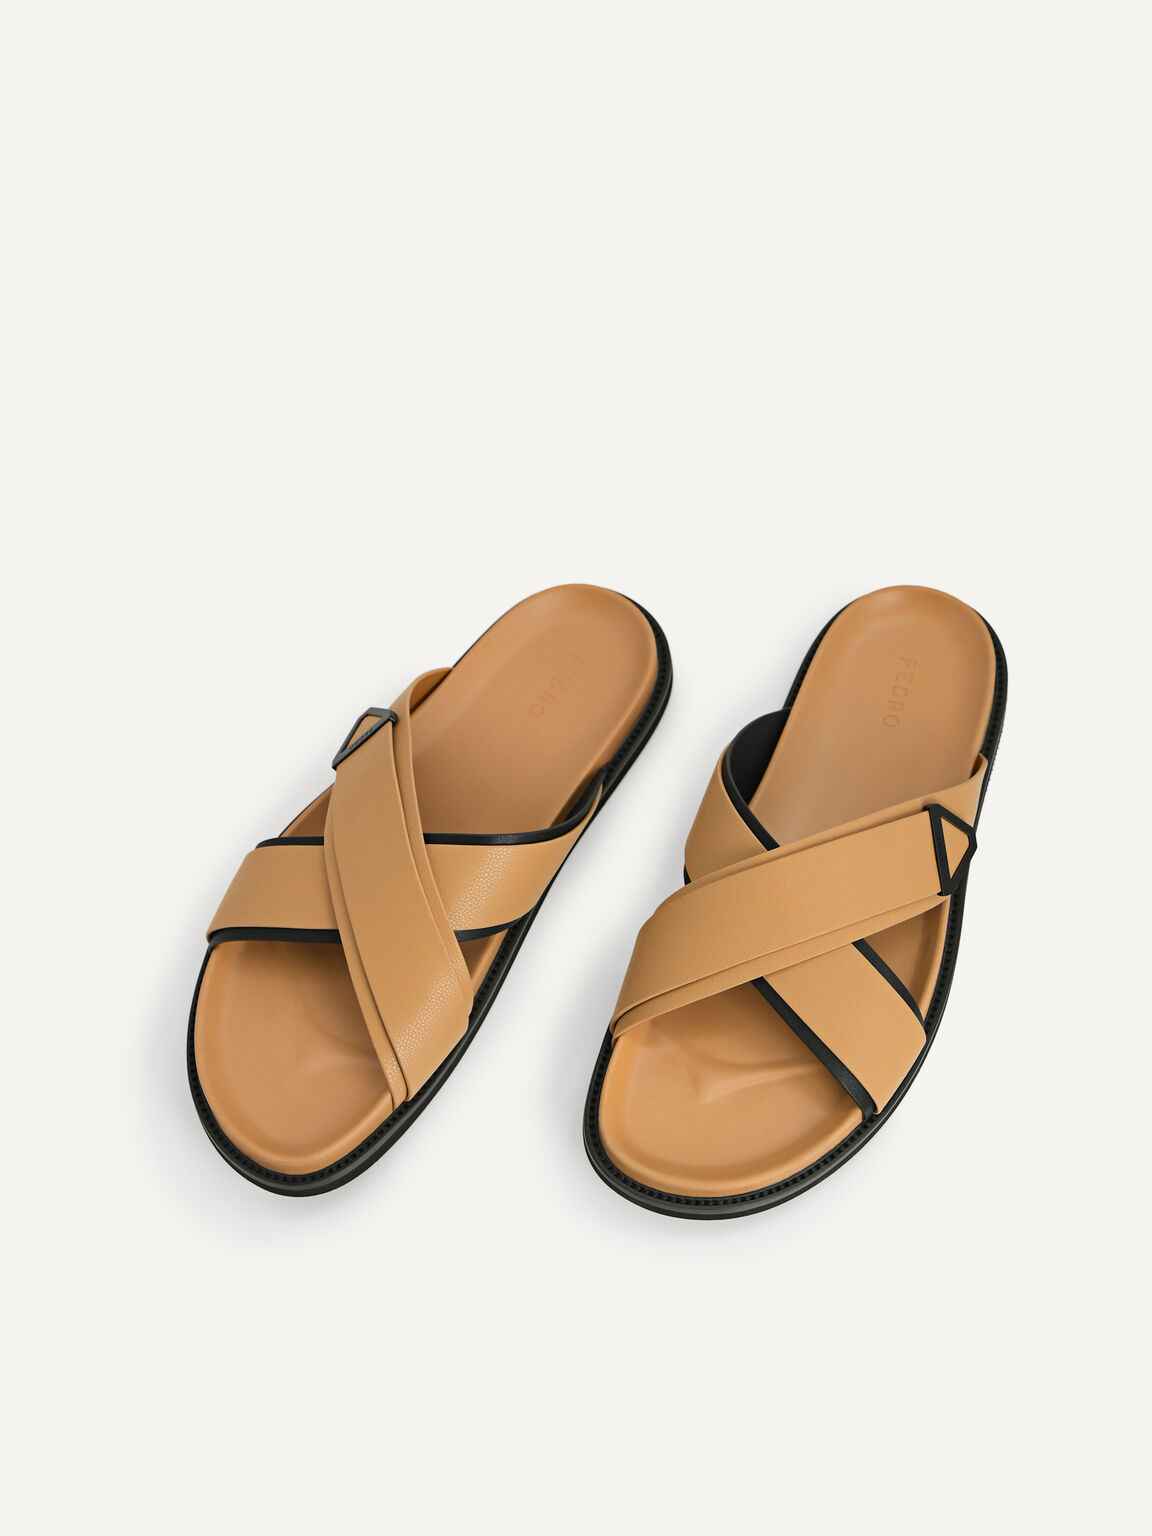 Criss-Cross Sandals, Sand